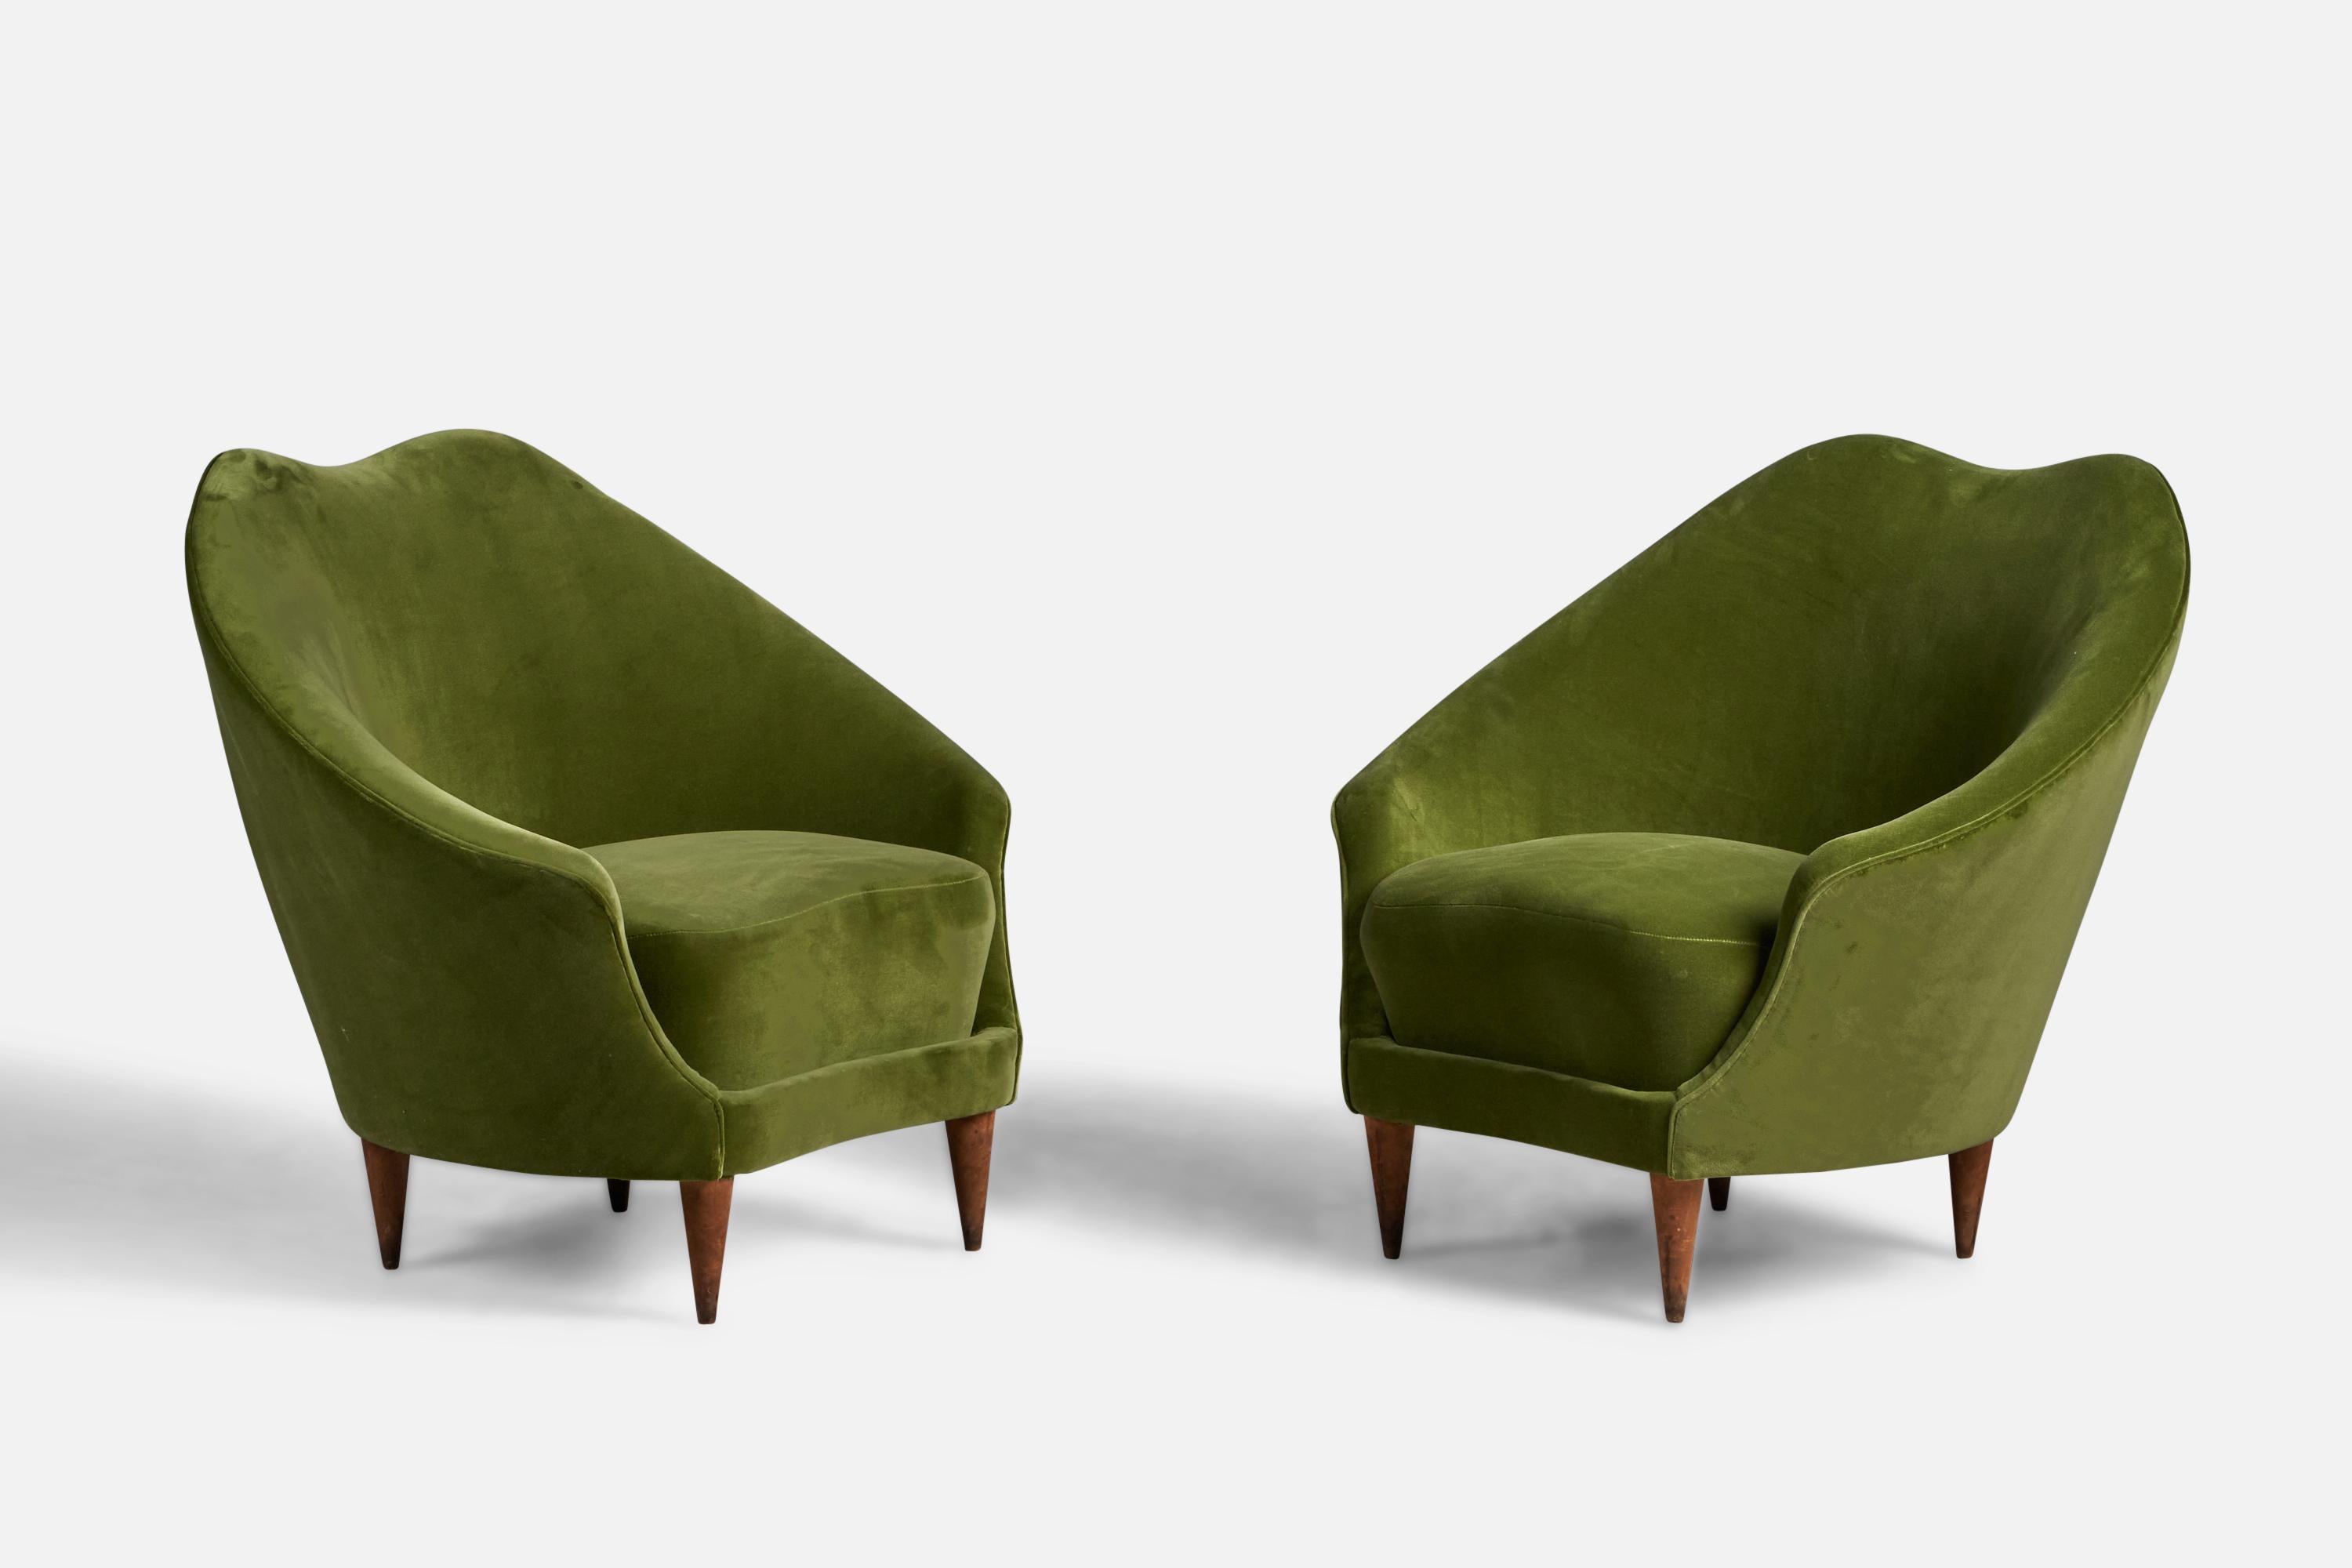 Paire de chaises longues en noyer et en velours vert conçues par Federico Munari et produites par ISA Bergamo, Italie, années 1950.

Hauteur d'assise de 16 pouces

